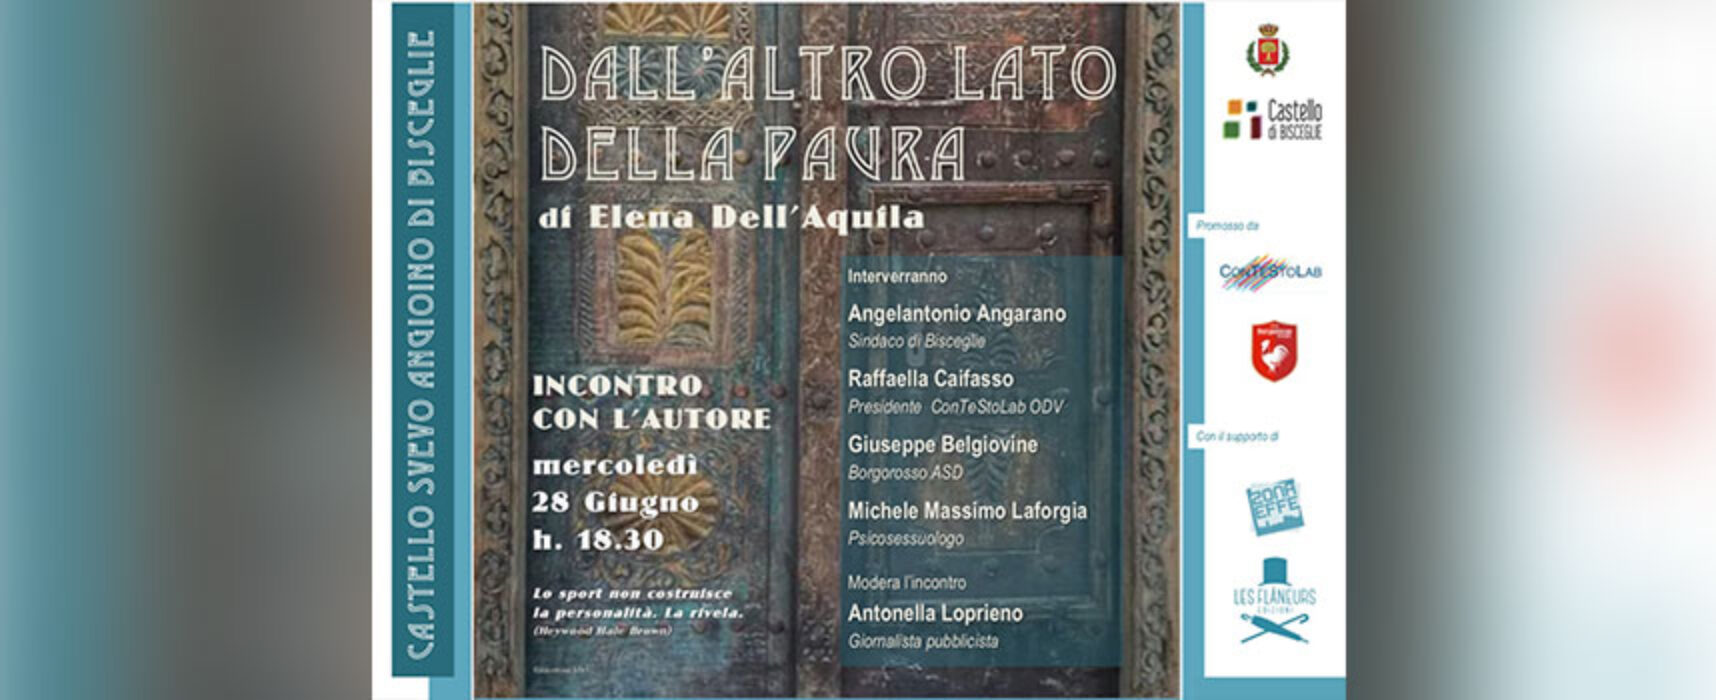 Elena Dell’Aquila presenta a Bisceglie il libro “Dall’altro lato della paura”